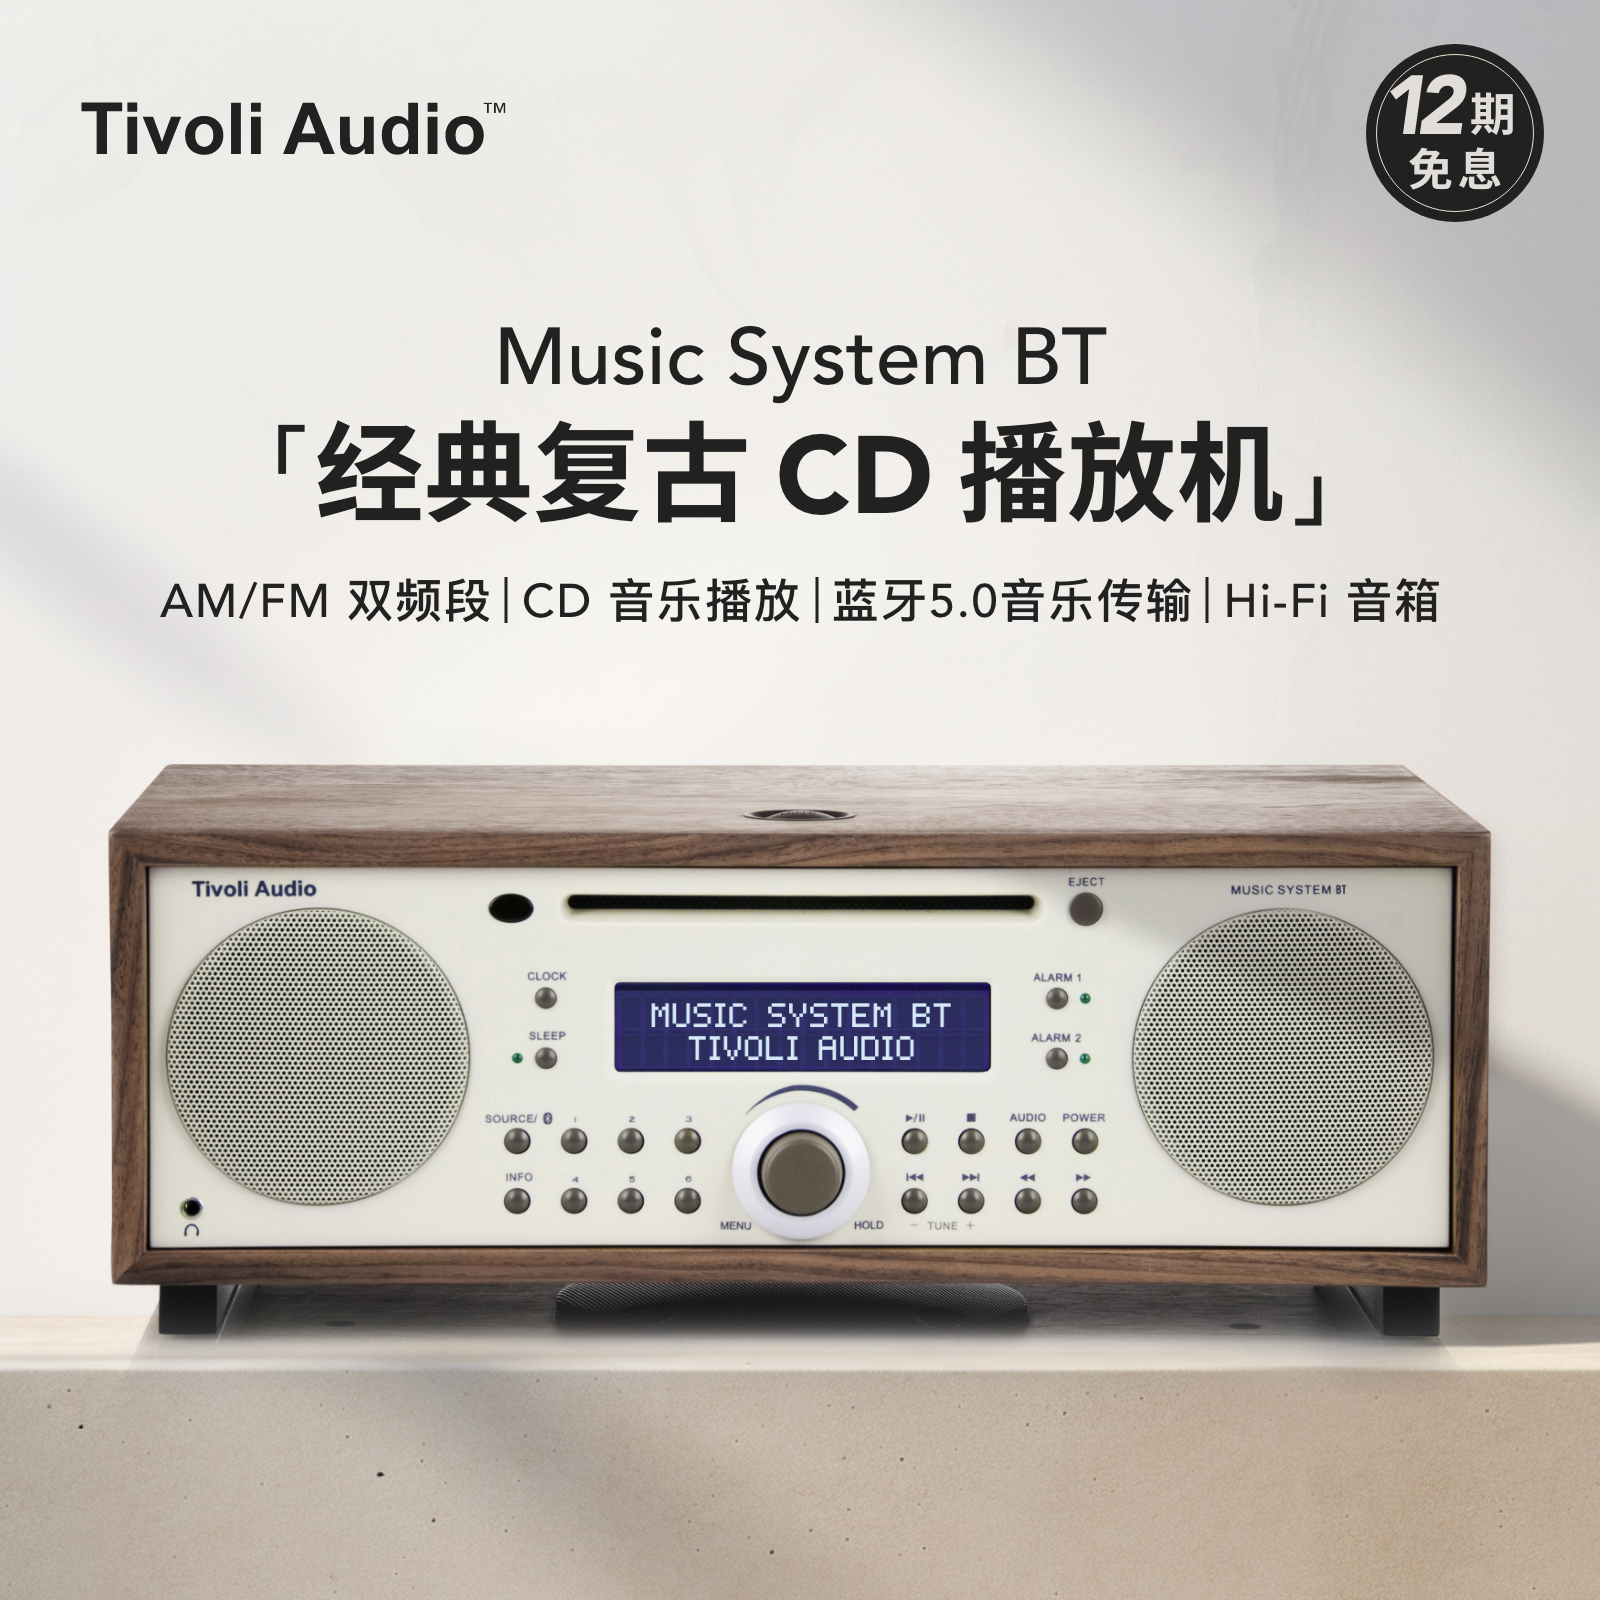 Tivoli Audio 流金岁月 Music System BT 2.1声道 居家 智能音箱 米色